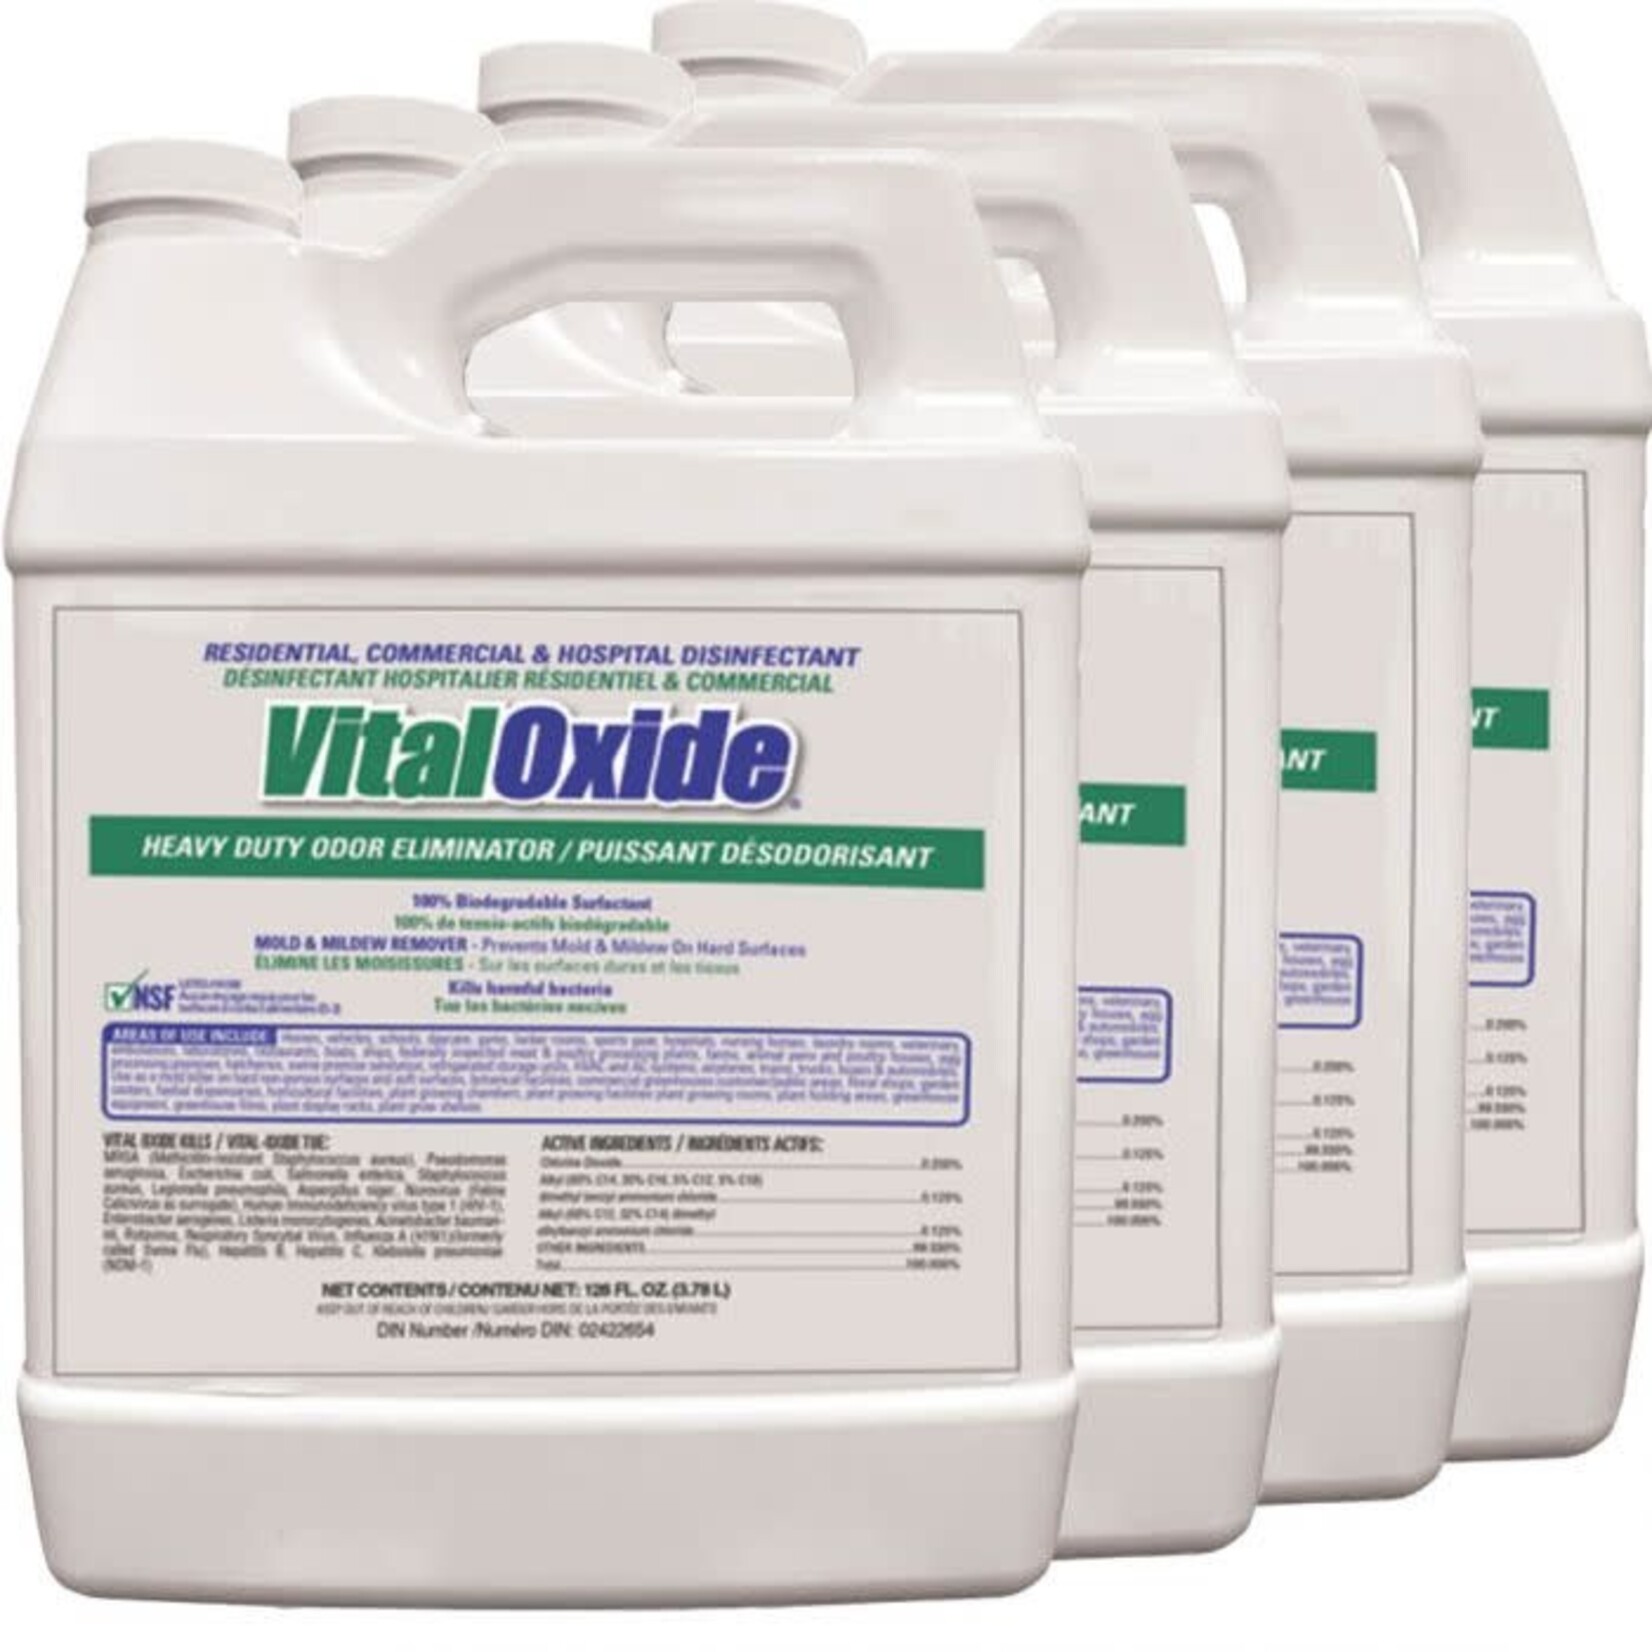 VitalOxide Residential, Commercial, & Hospital Disinfectant - Case of 4x1 Gallon